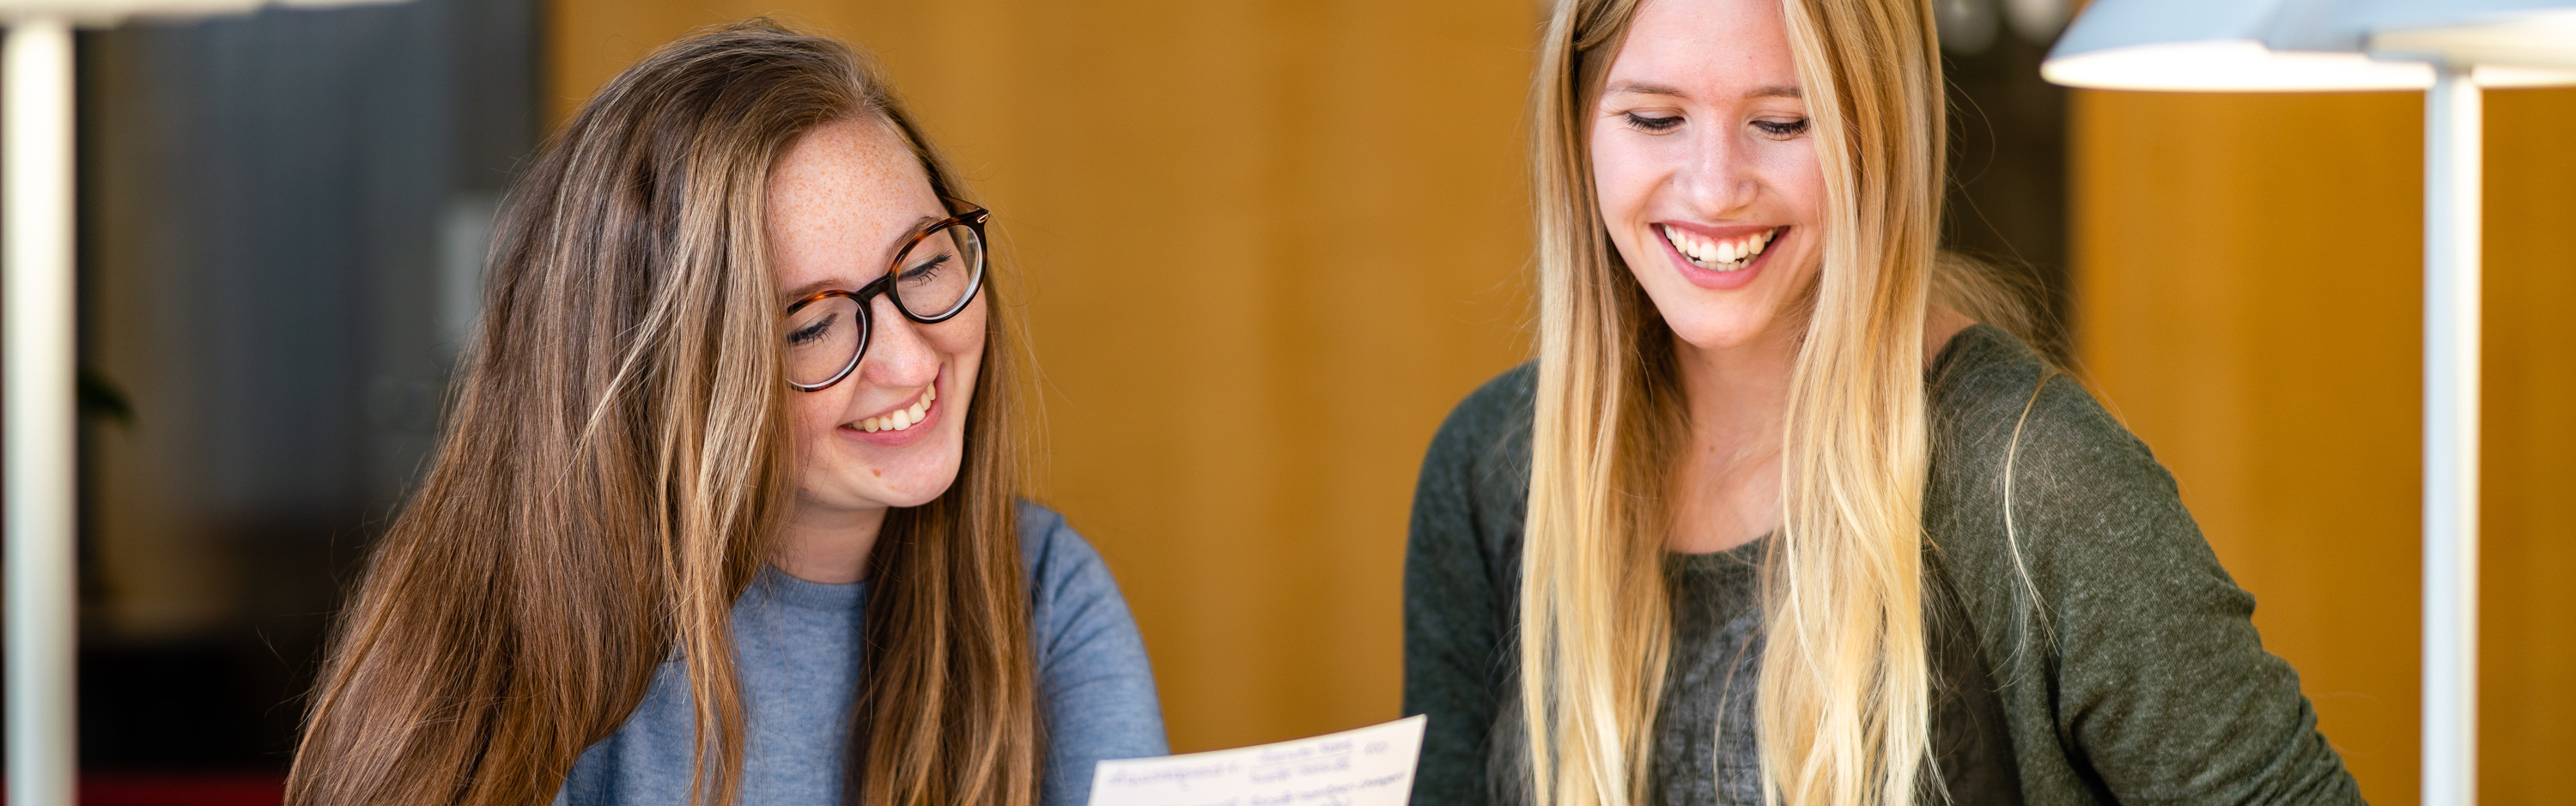 Master of Arts Fachübersetzen Wirtschaft Deutsch/Polnisch - Zwei lachende Studentinnen lesen etwas von einem Zettel ab.